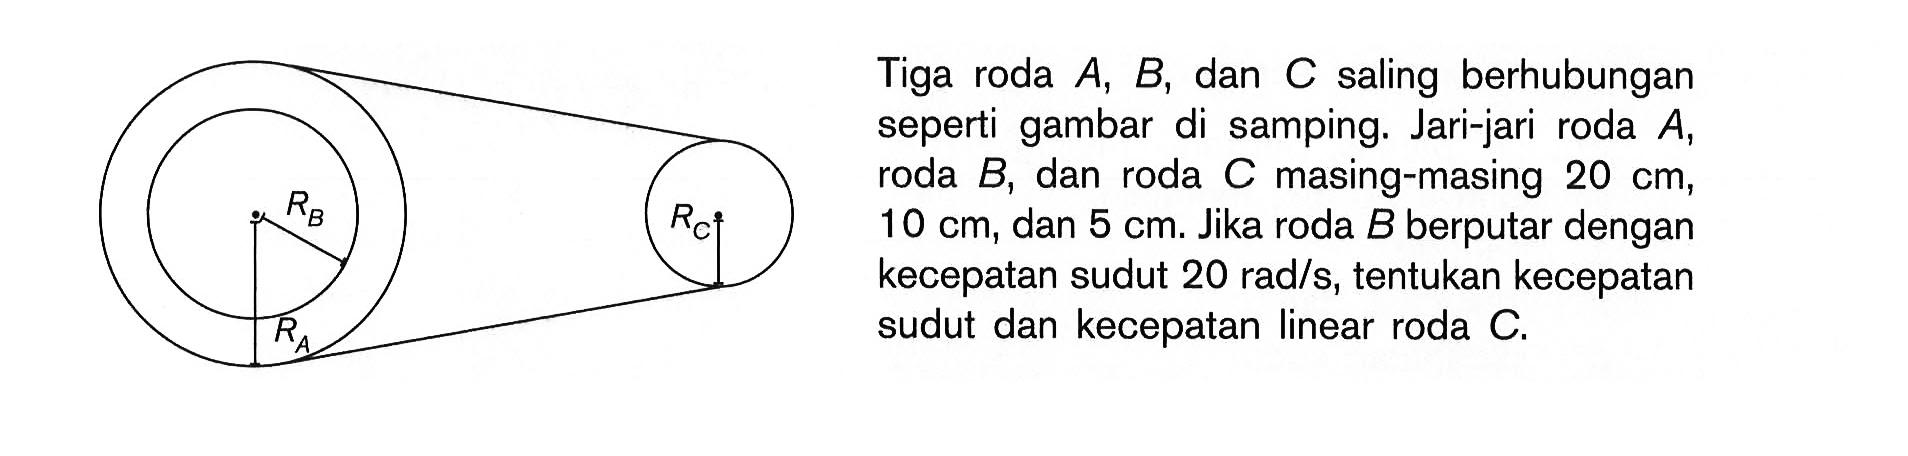 Tiga roda A, B, dan C saling berhubungan seperti gambar di samping. Jari-jari roda A, roda B, dan roda C masing-masing 20 cm, 10 cm, dan 5 cm. Jika roda B berputar dengan kecepatan sudut 20 rad/s, tentukan kecepatan sudut dan kecepatan linear roda C. RB RC RA 